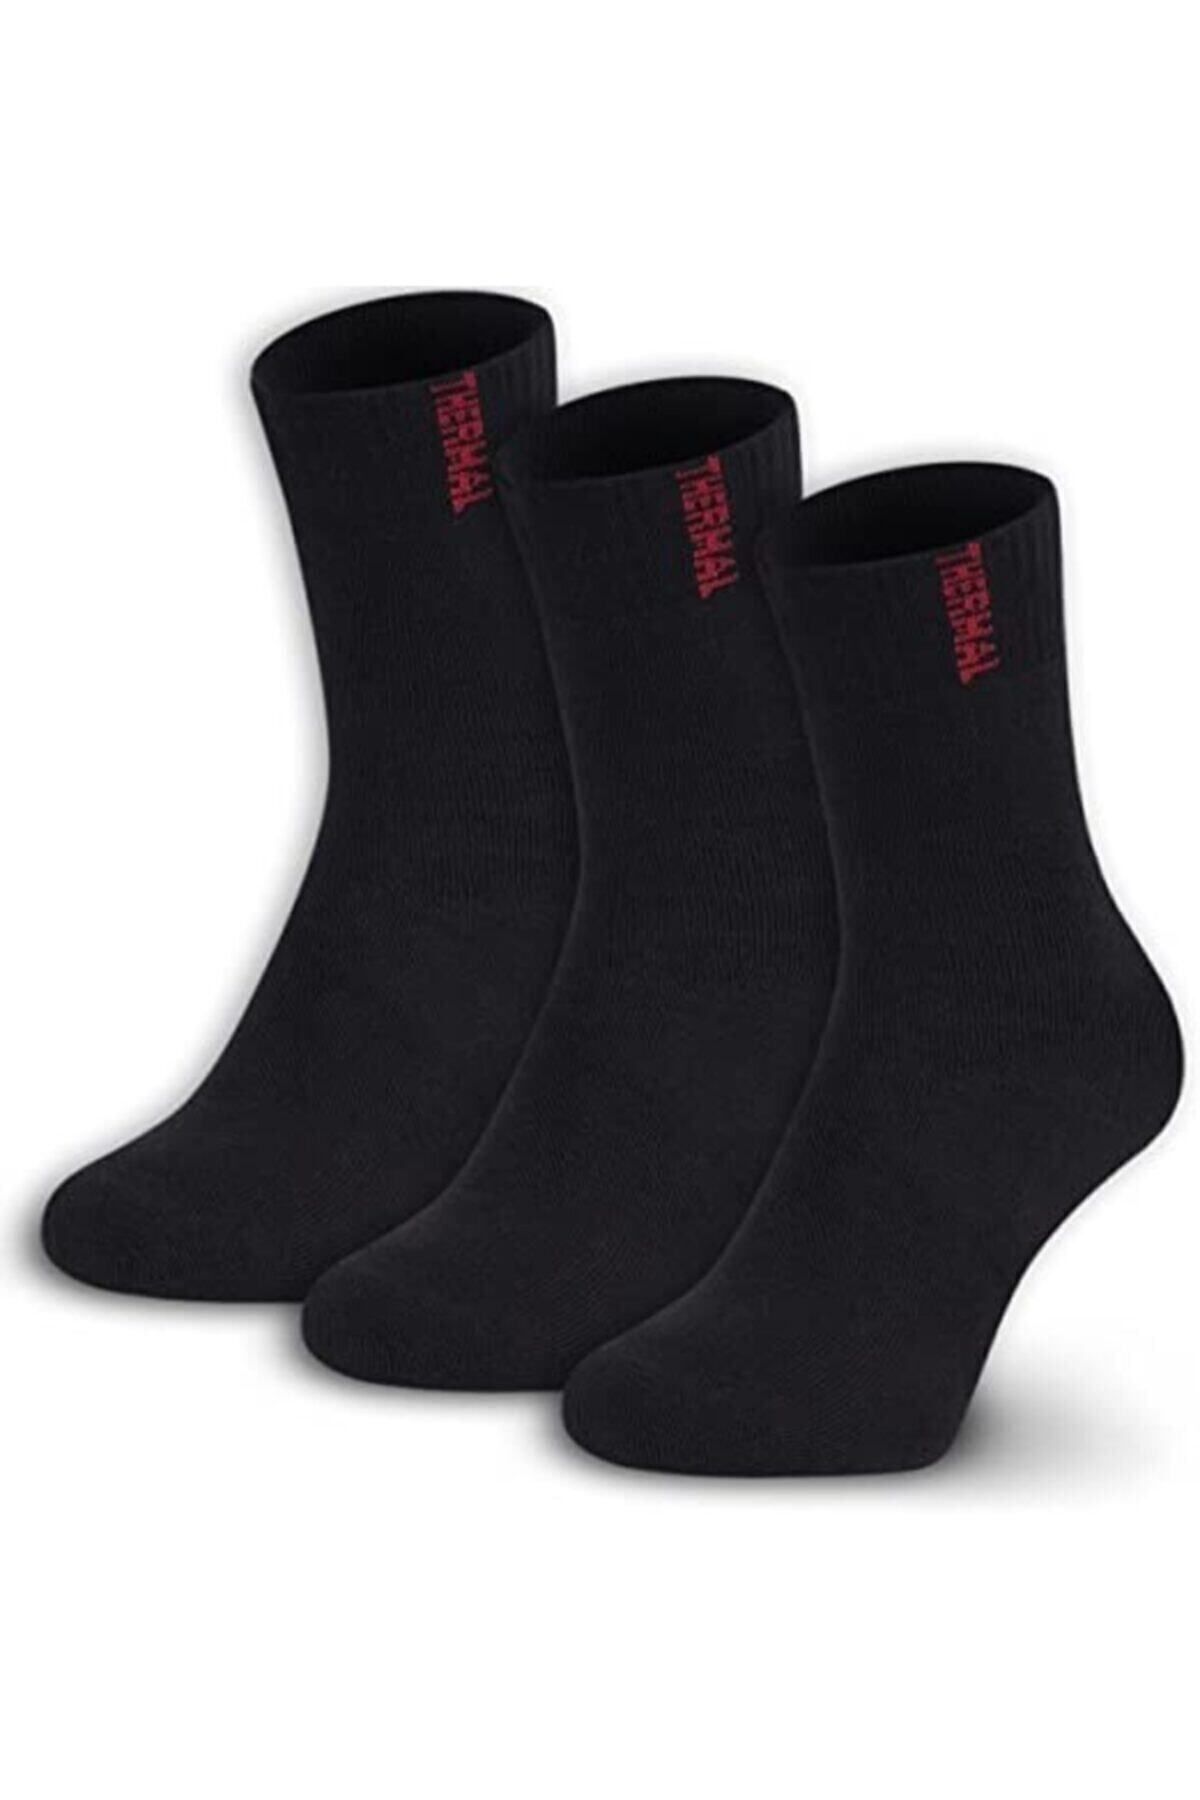 shoticaret Kışlık Kalın Termal Çorap, Kadın Ve Erkek Için, 3'lü Paket, Sıcak Tutan Çorap